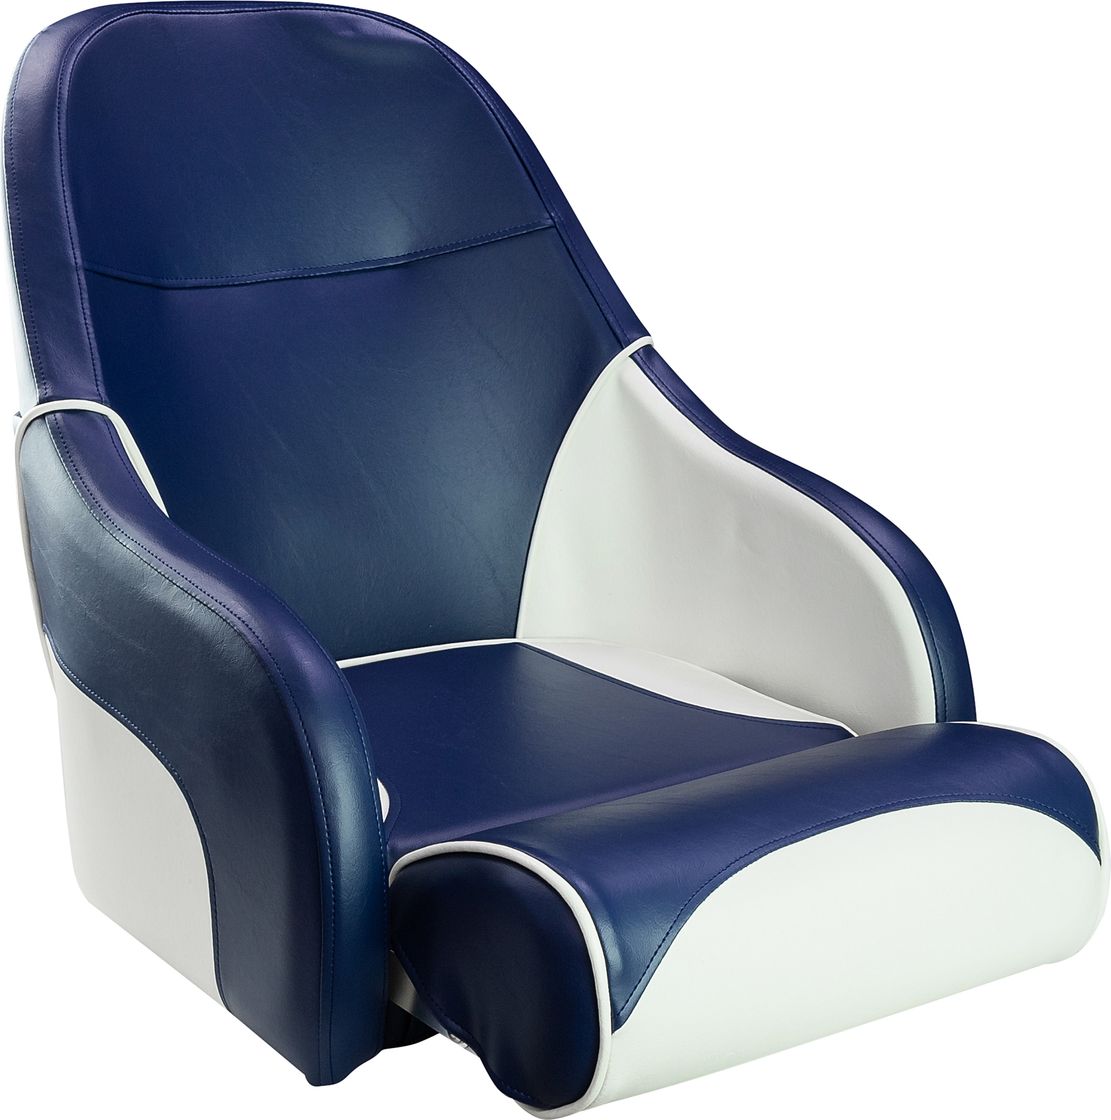 Кресло с болстером Ocean Flip Up, обивка синий/белый винил (упаковка из 2 шт.) 13127WB-MR_pkg_2 - фото 1